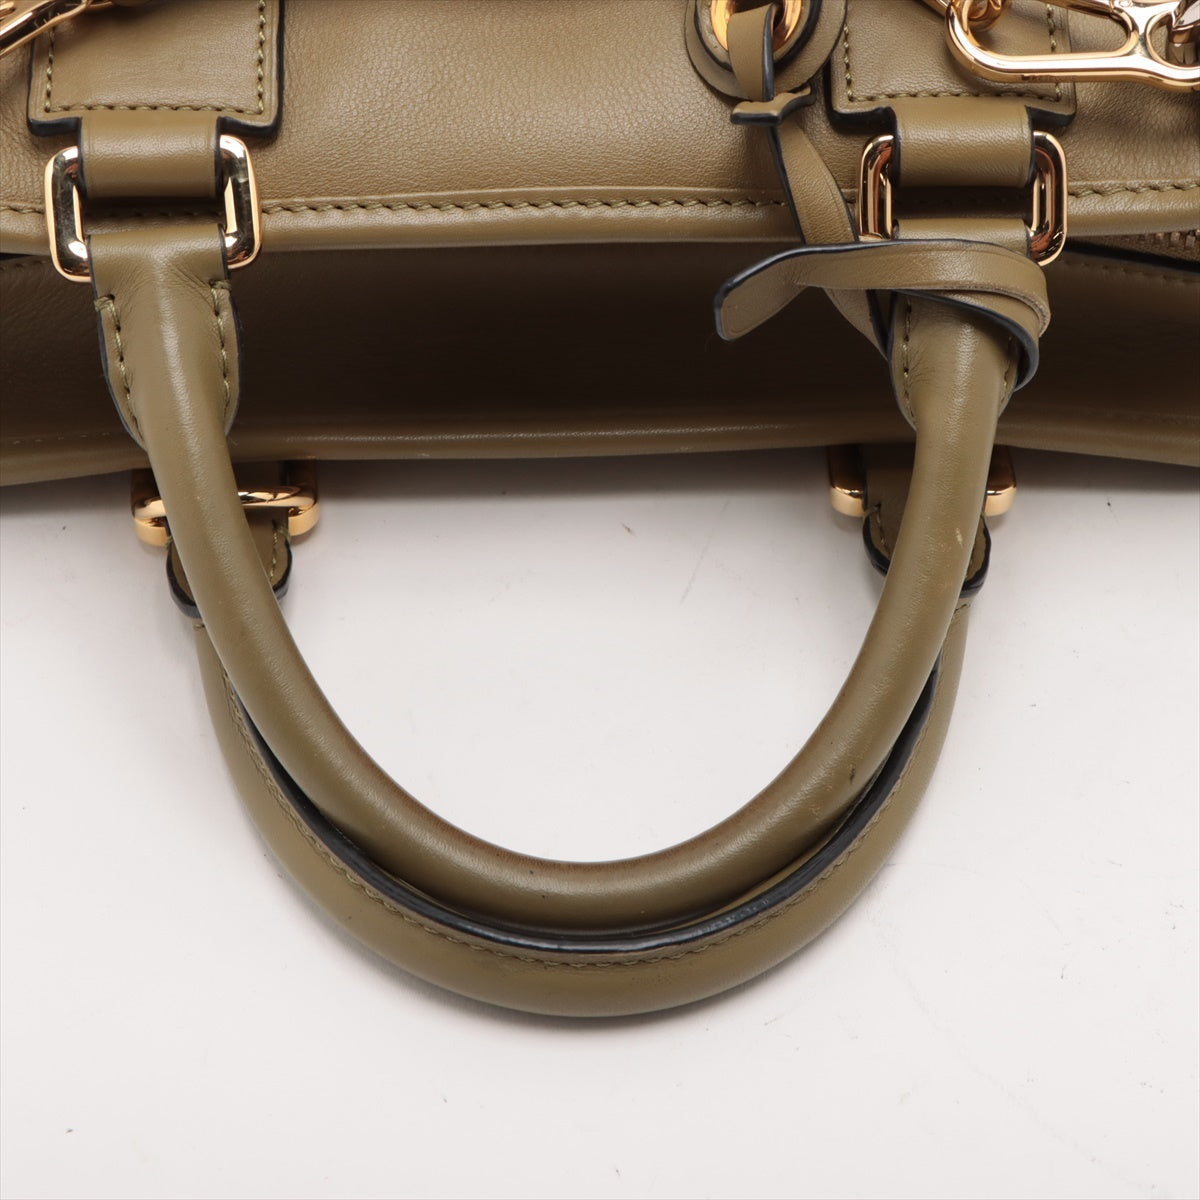 Loewe Amazona 28 Multiplication Leather 2way handbag Khaki